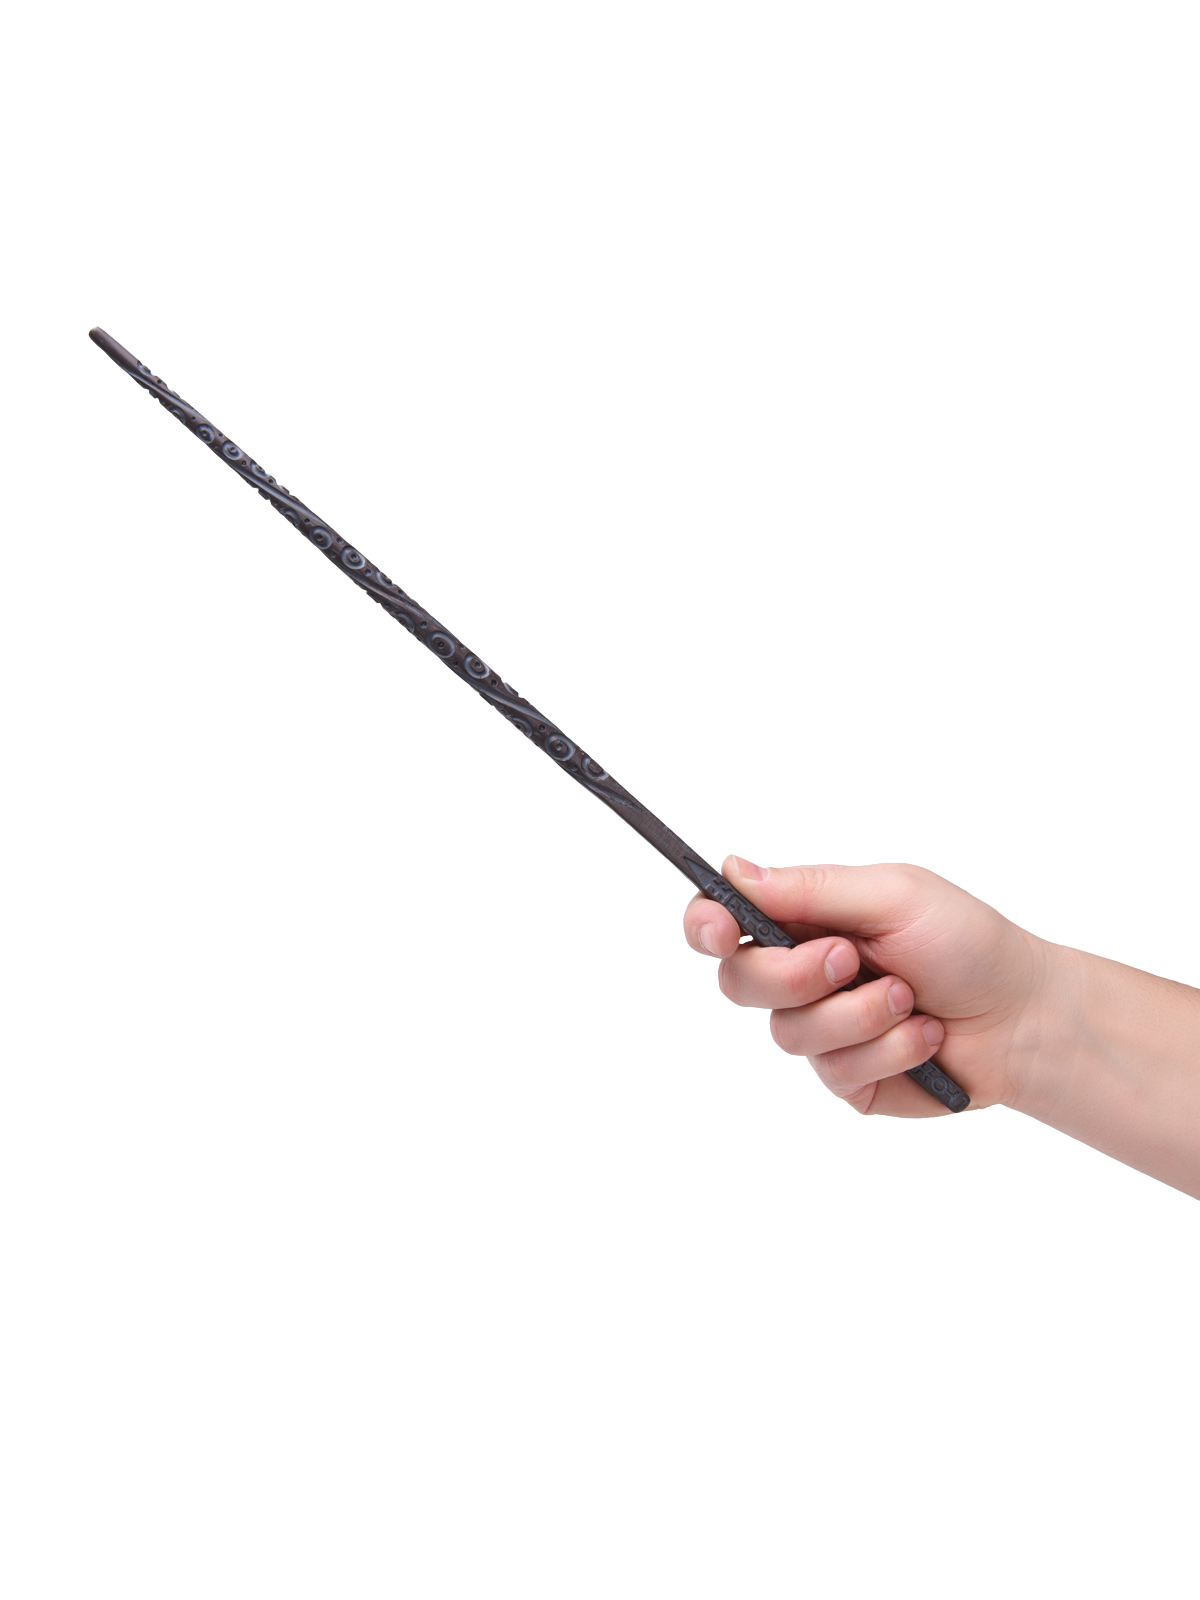 Волшебная палочка Сириуса Блэка из Гарри Поттера harry potter